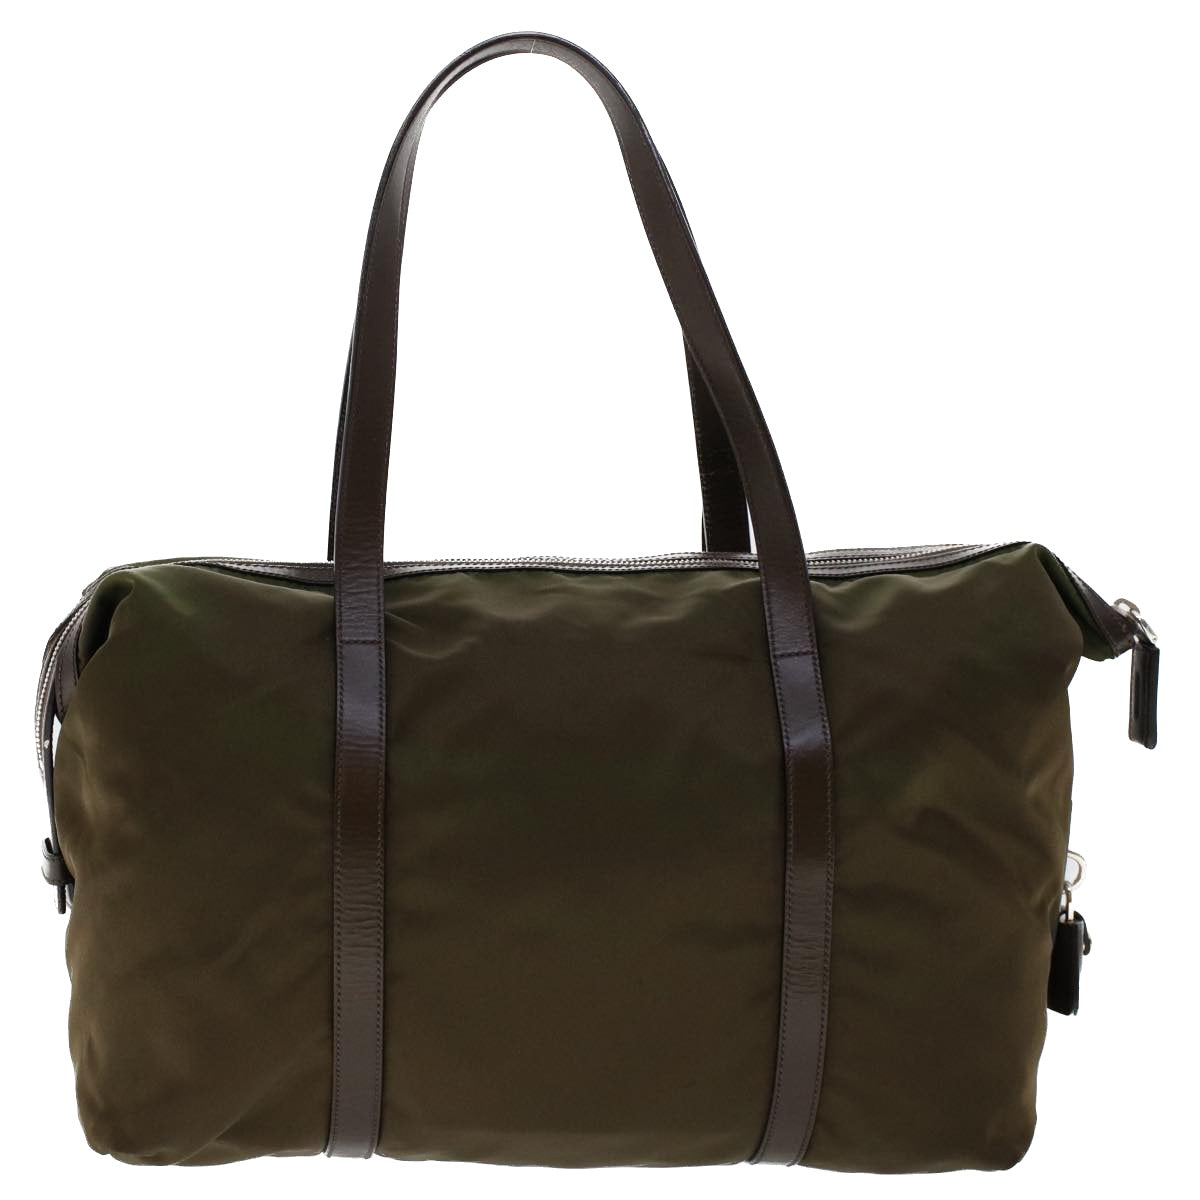 PRADA Tote Bag Nylon Leather Khaki Auth tb709 - 0